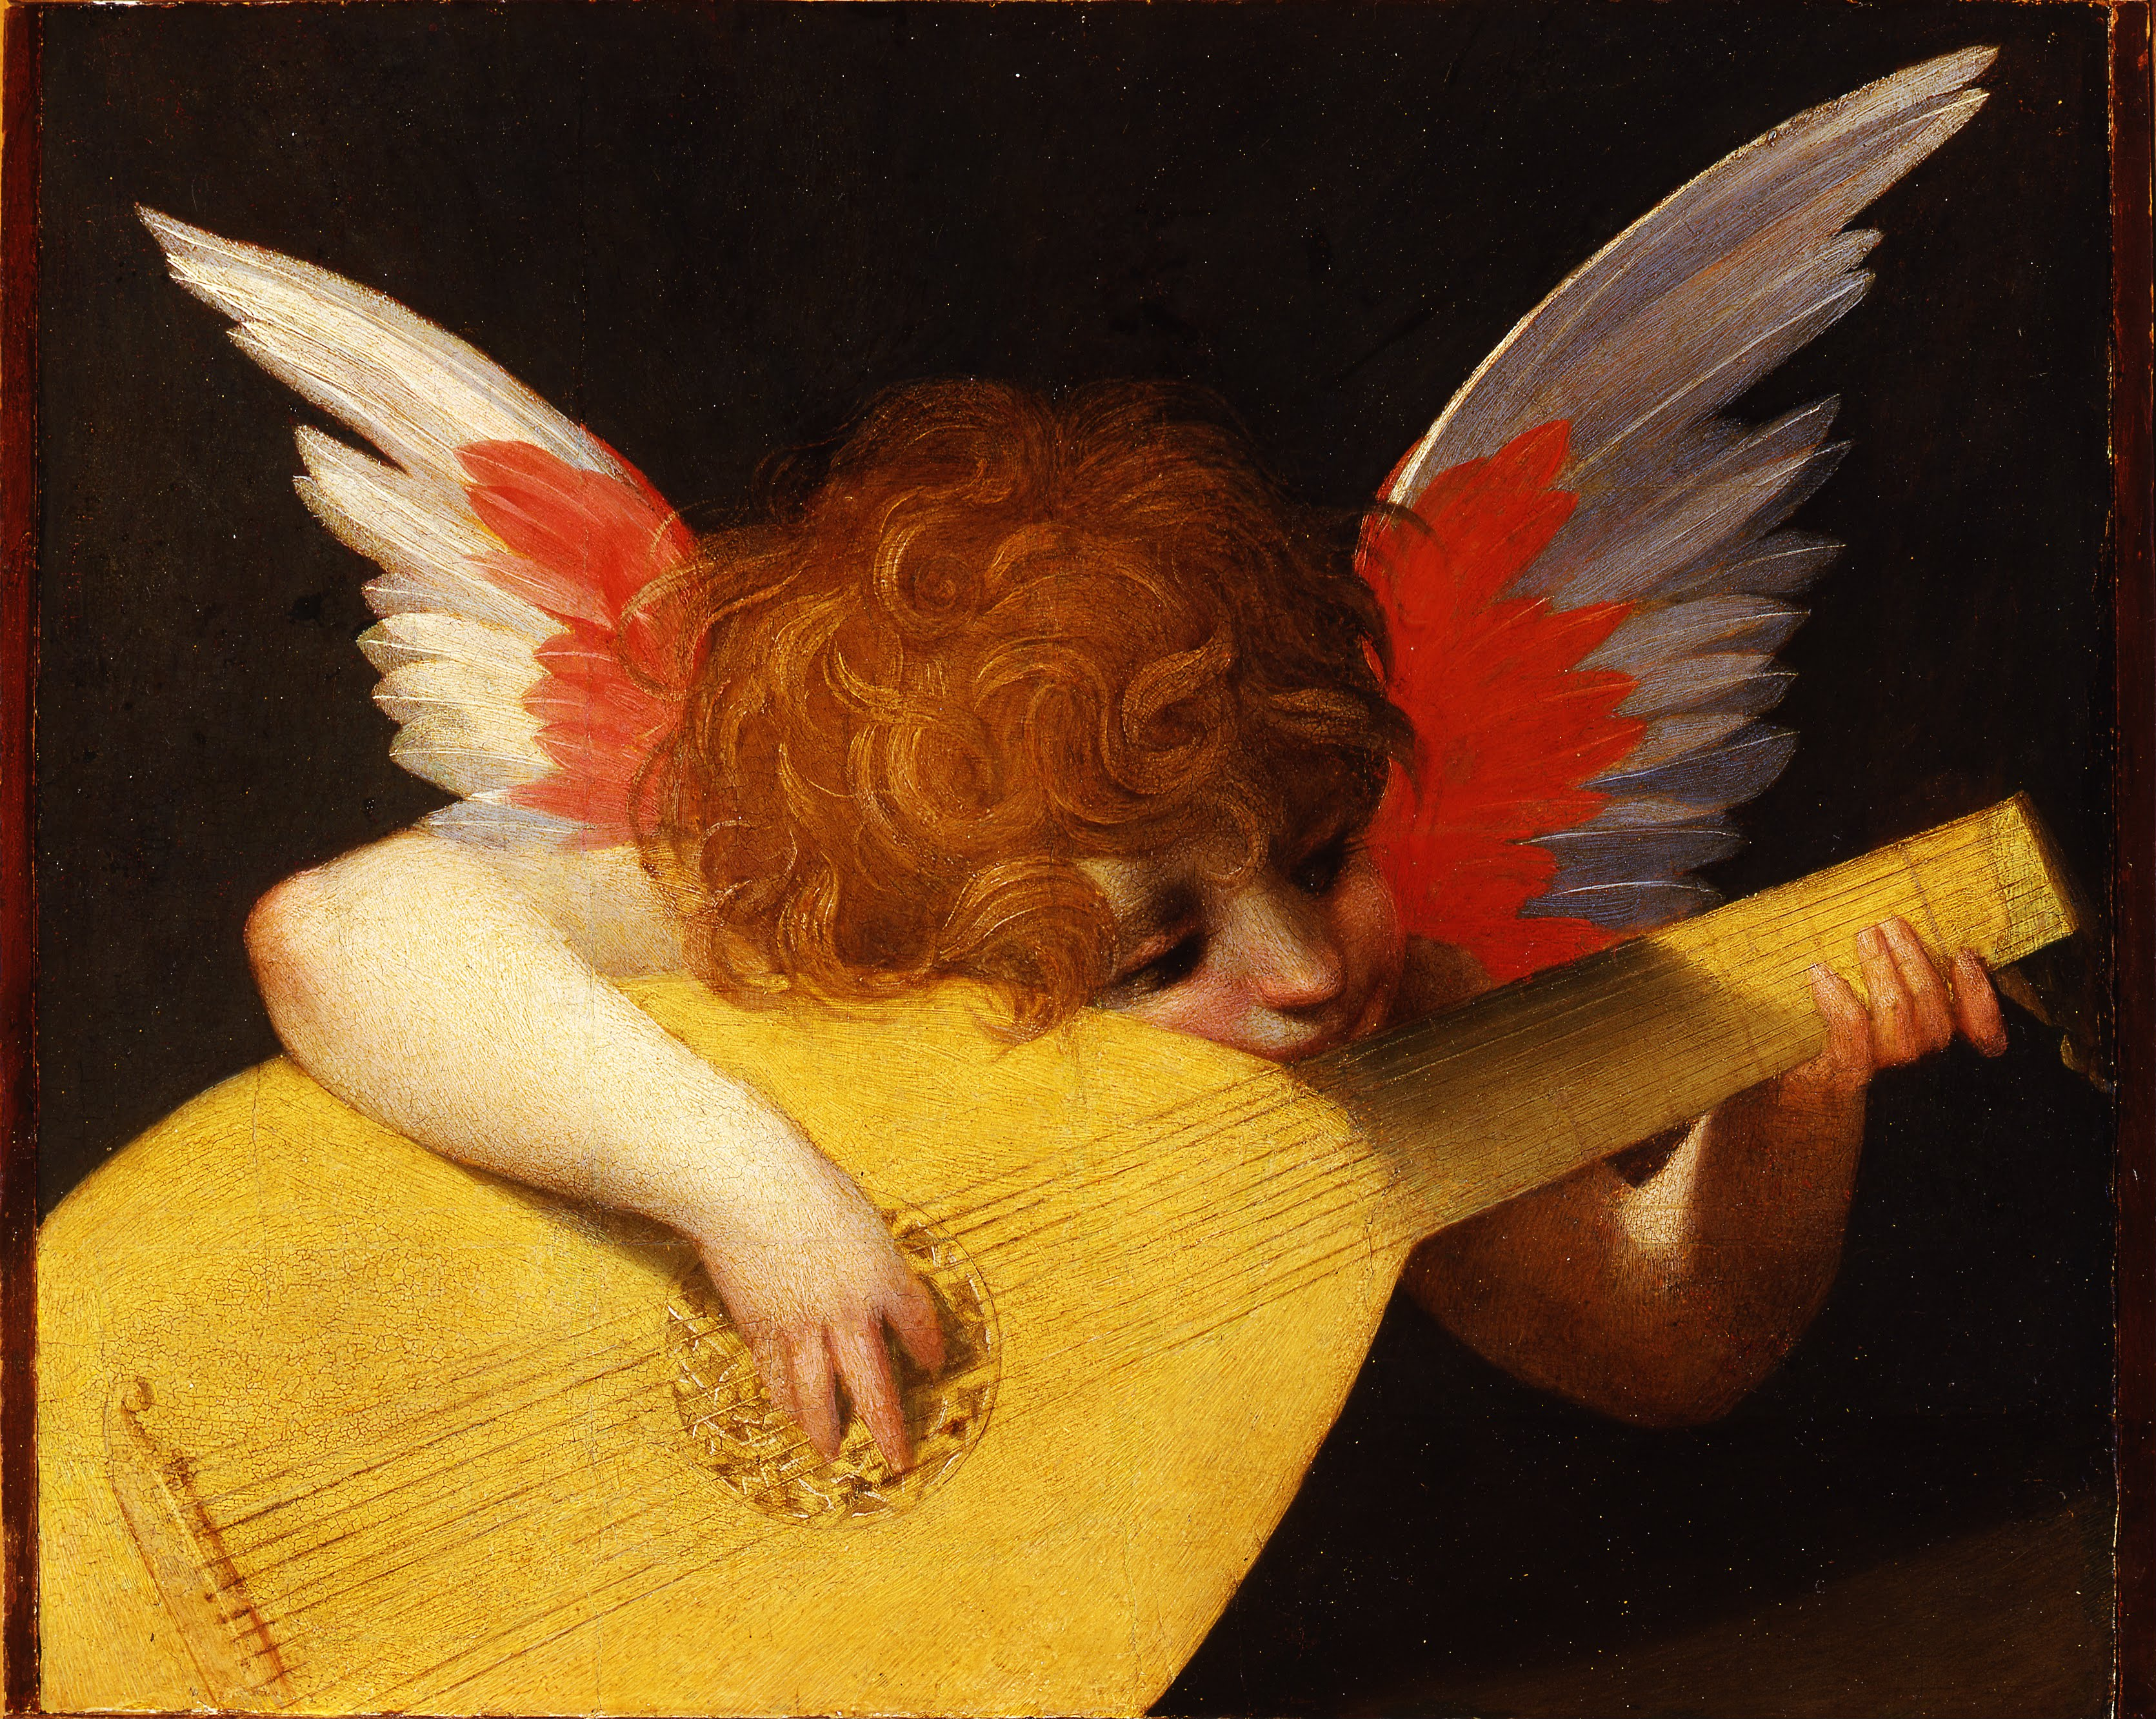 류트를 연주하는 천사(Angel Playing the Lute) by Rosso Fiorentino - 1521 - 39.5 x 47 cm 